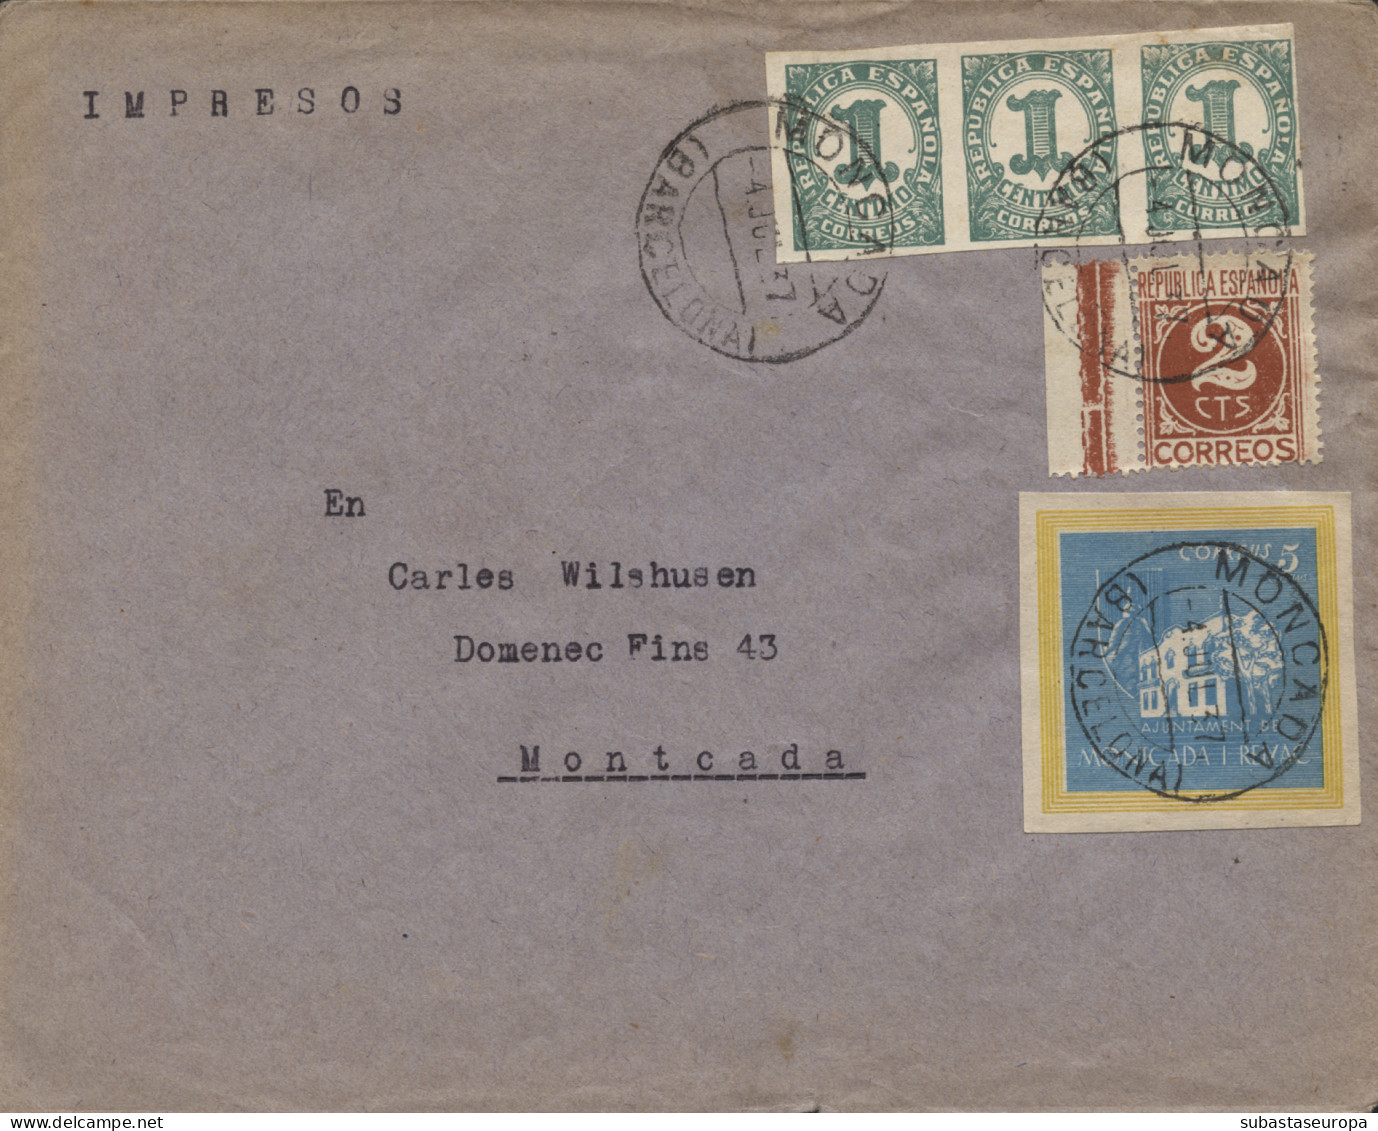 Carta Franqueada Con Viñeta De Montcada, Año 1937. - Bolli Di Censura Repubblicana